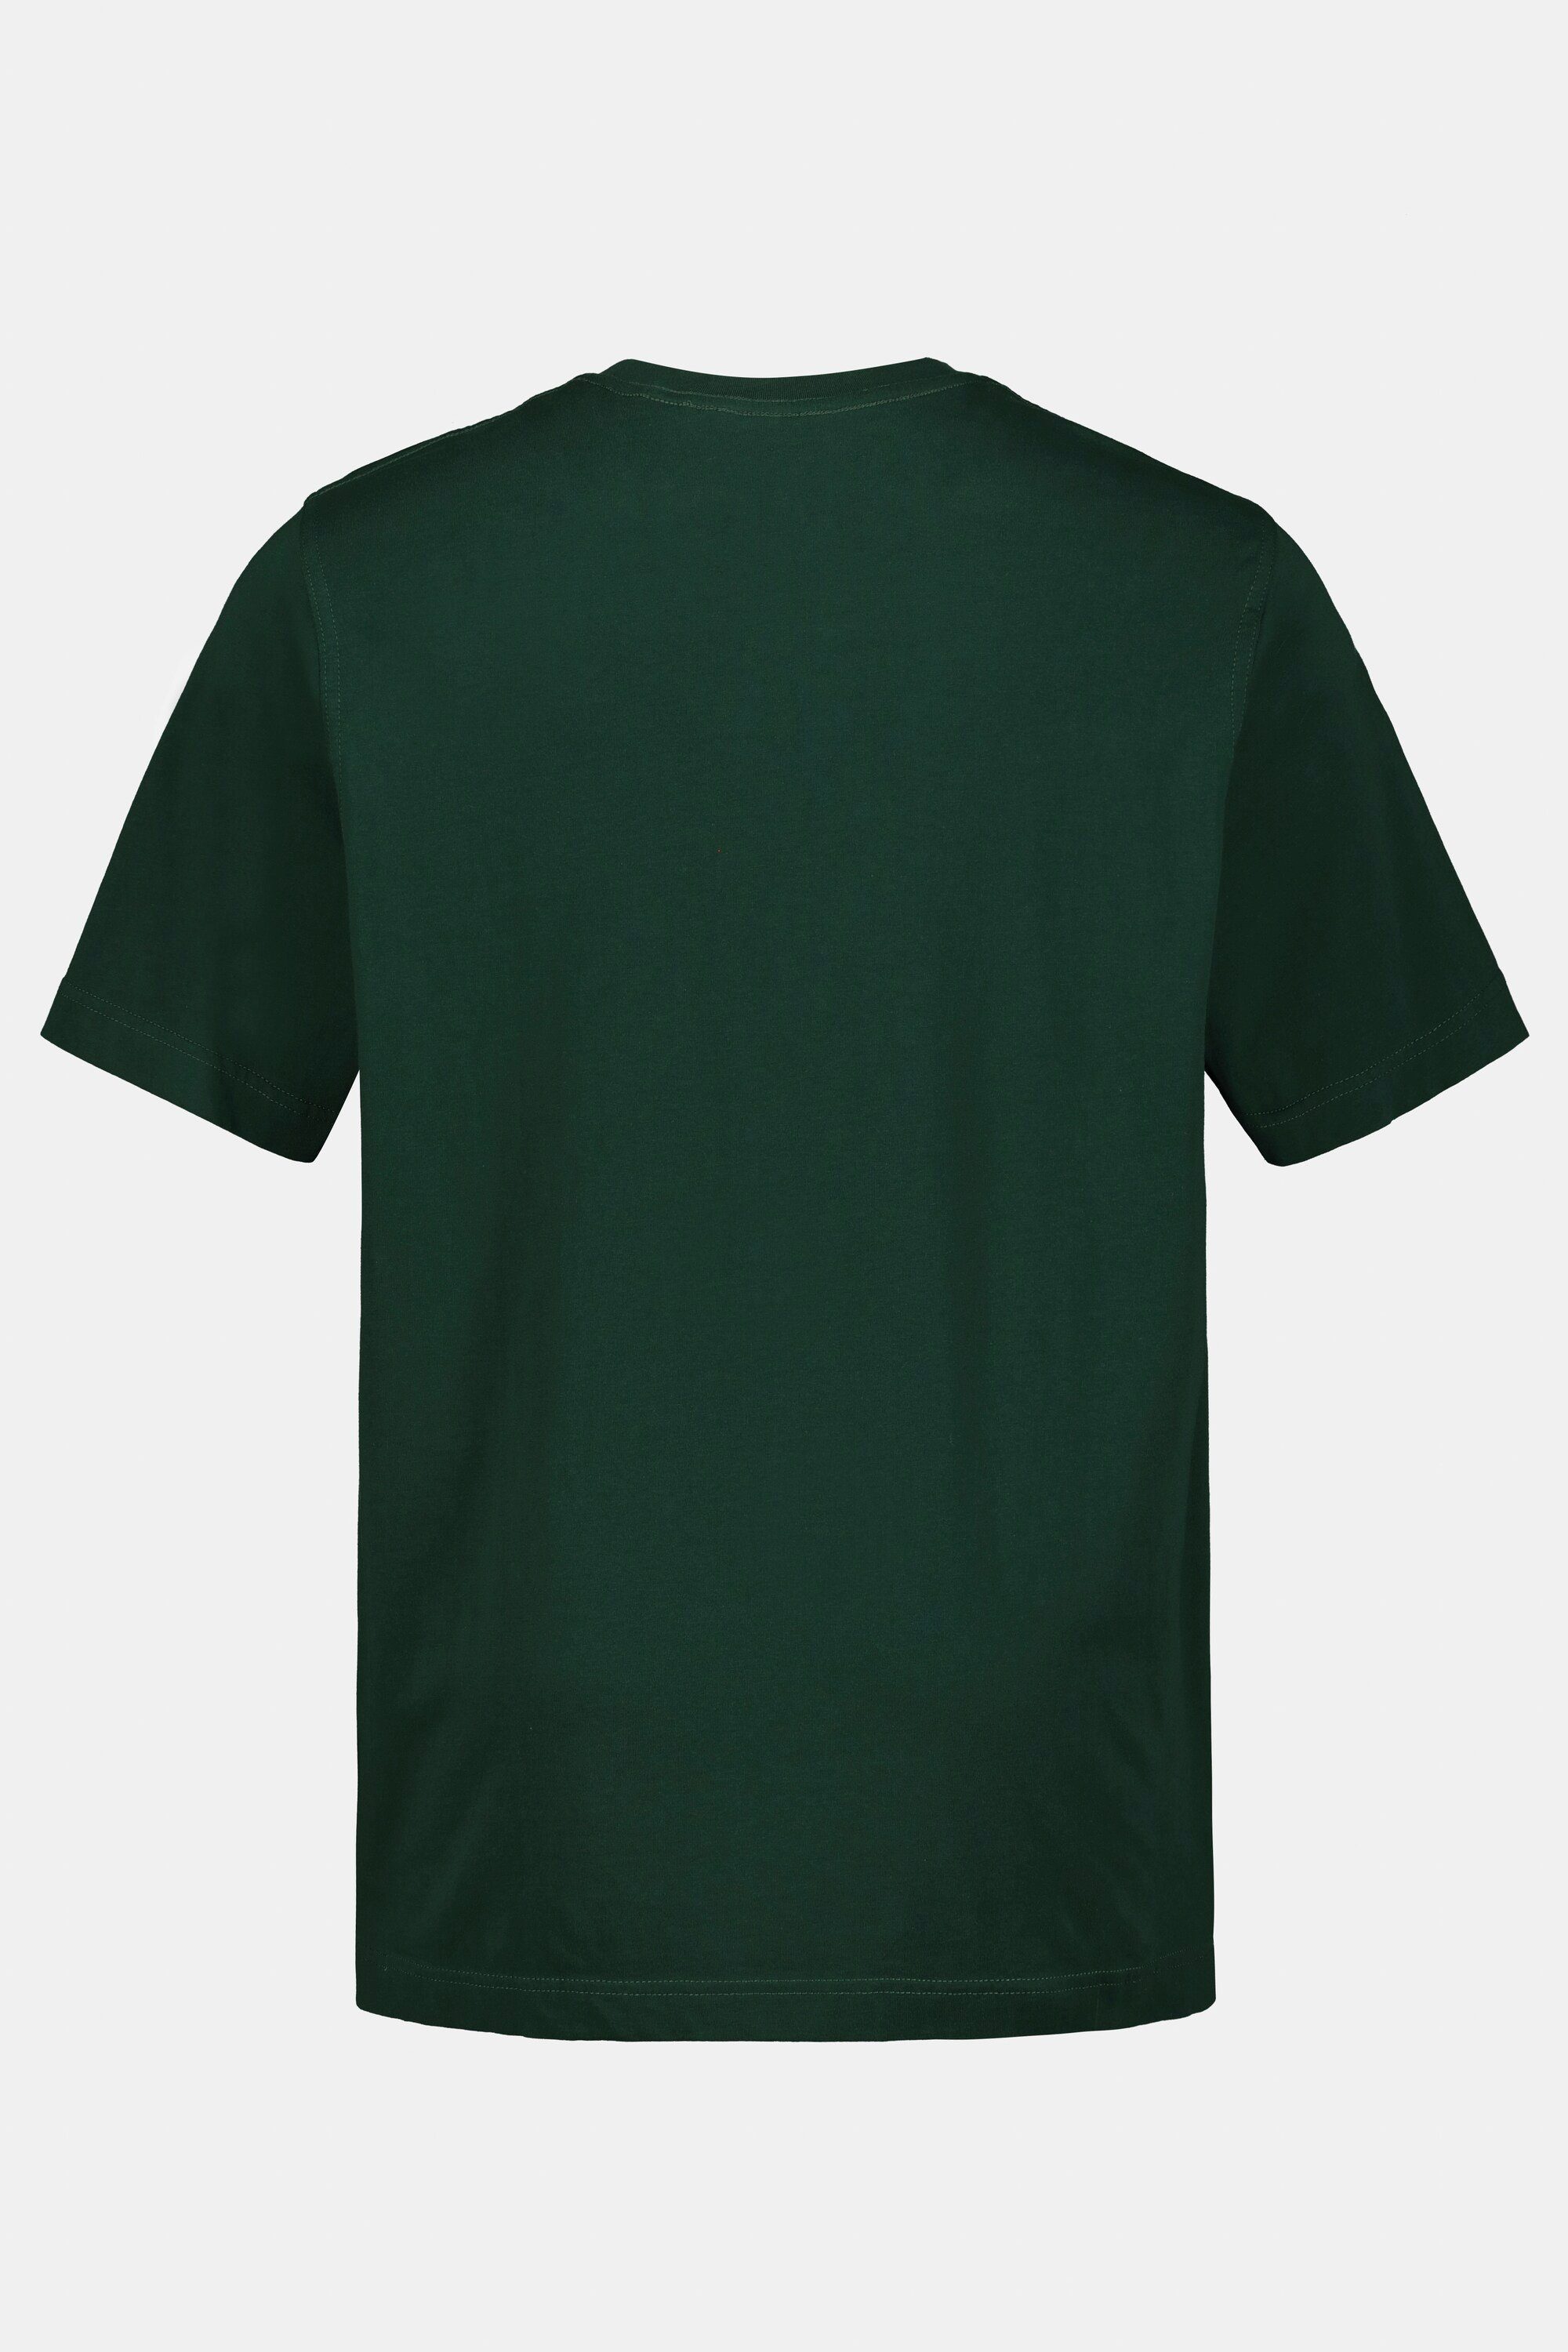 gekämmte JP1880 bis Rundhals 8XL T-Shirt dunkelgrün Baumwolle T-Shirt Basic